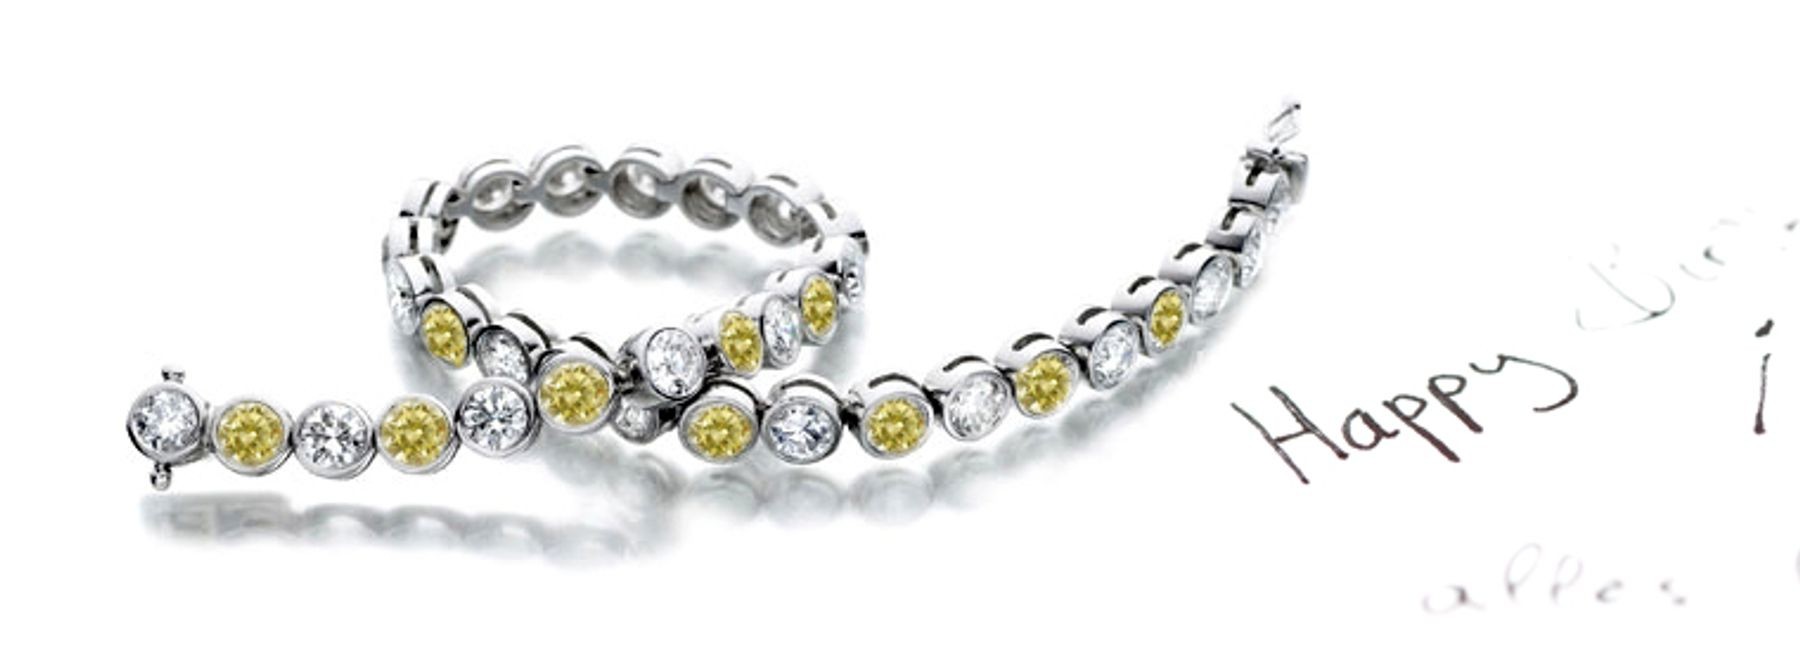 Premier Colored Diamonds Designer Collection - Yellow Colored Diamonds & White Diamonds Fancy Yellow Diamond Bracele